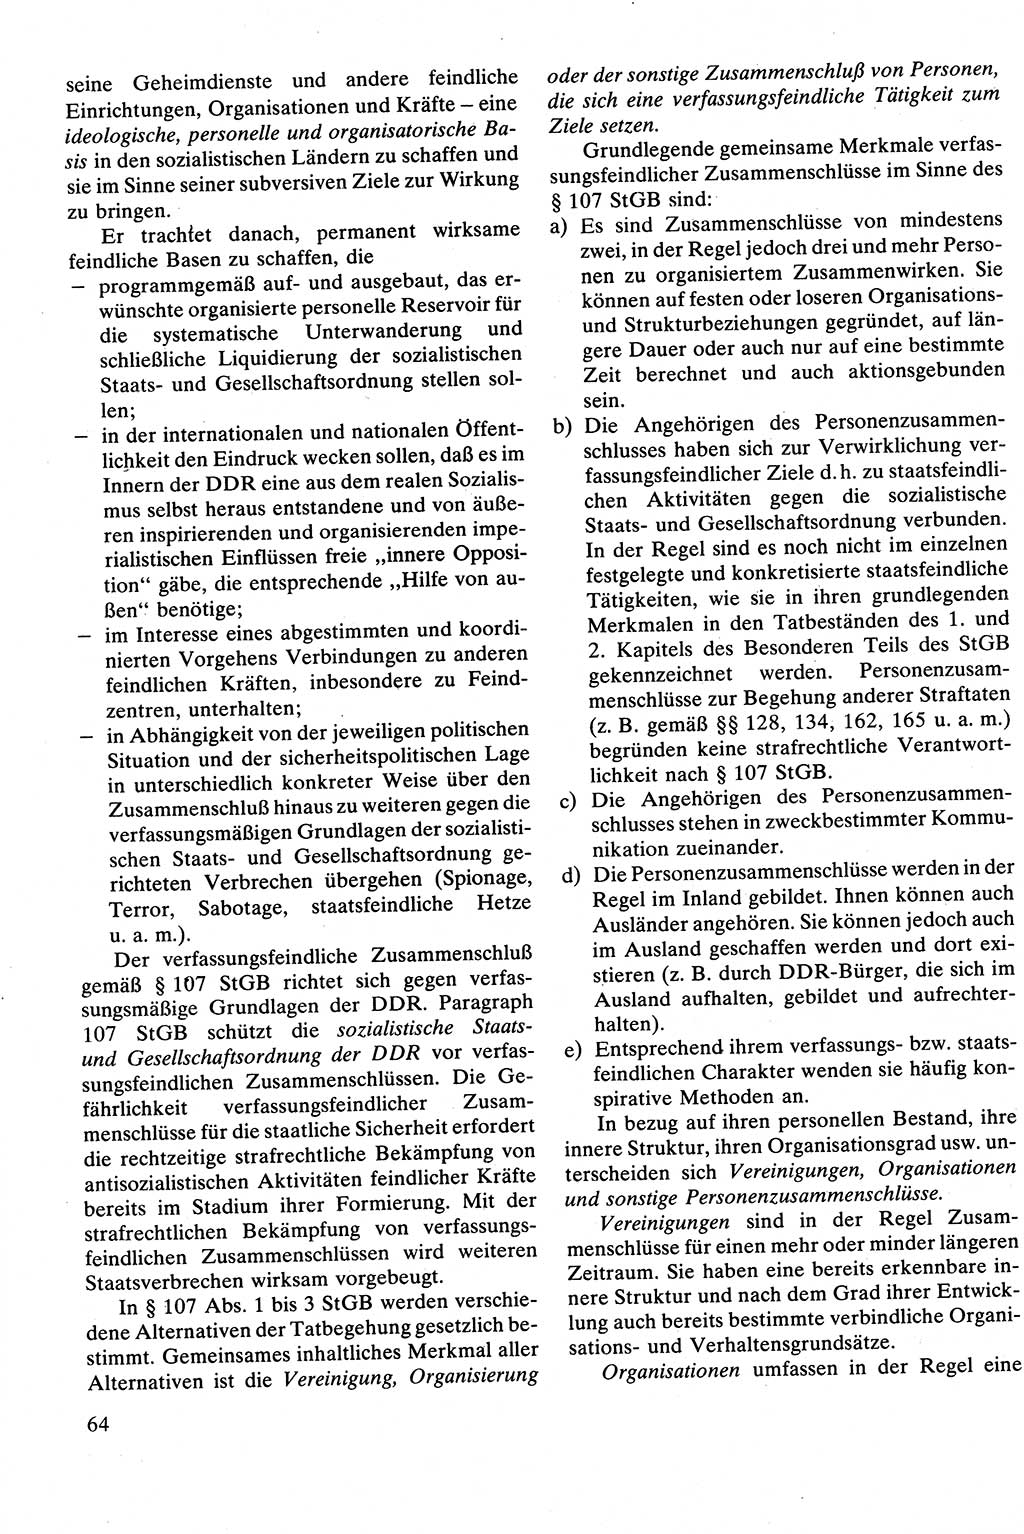 Strafrecht [Deutsche Demokratische Republik (DDR)], Besonderer Teil, Lehrbuch 1981, Seite 64 (Strafr. DDR BT Lb. 1981, S. 64)